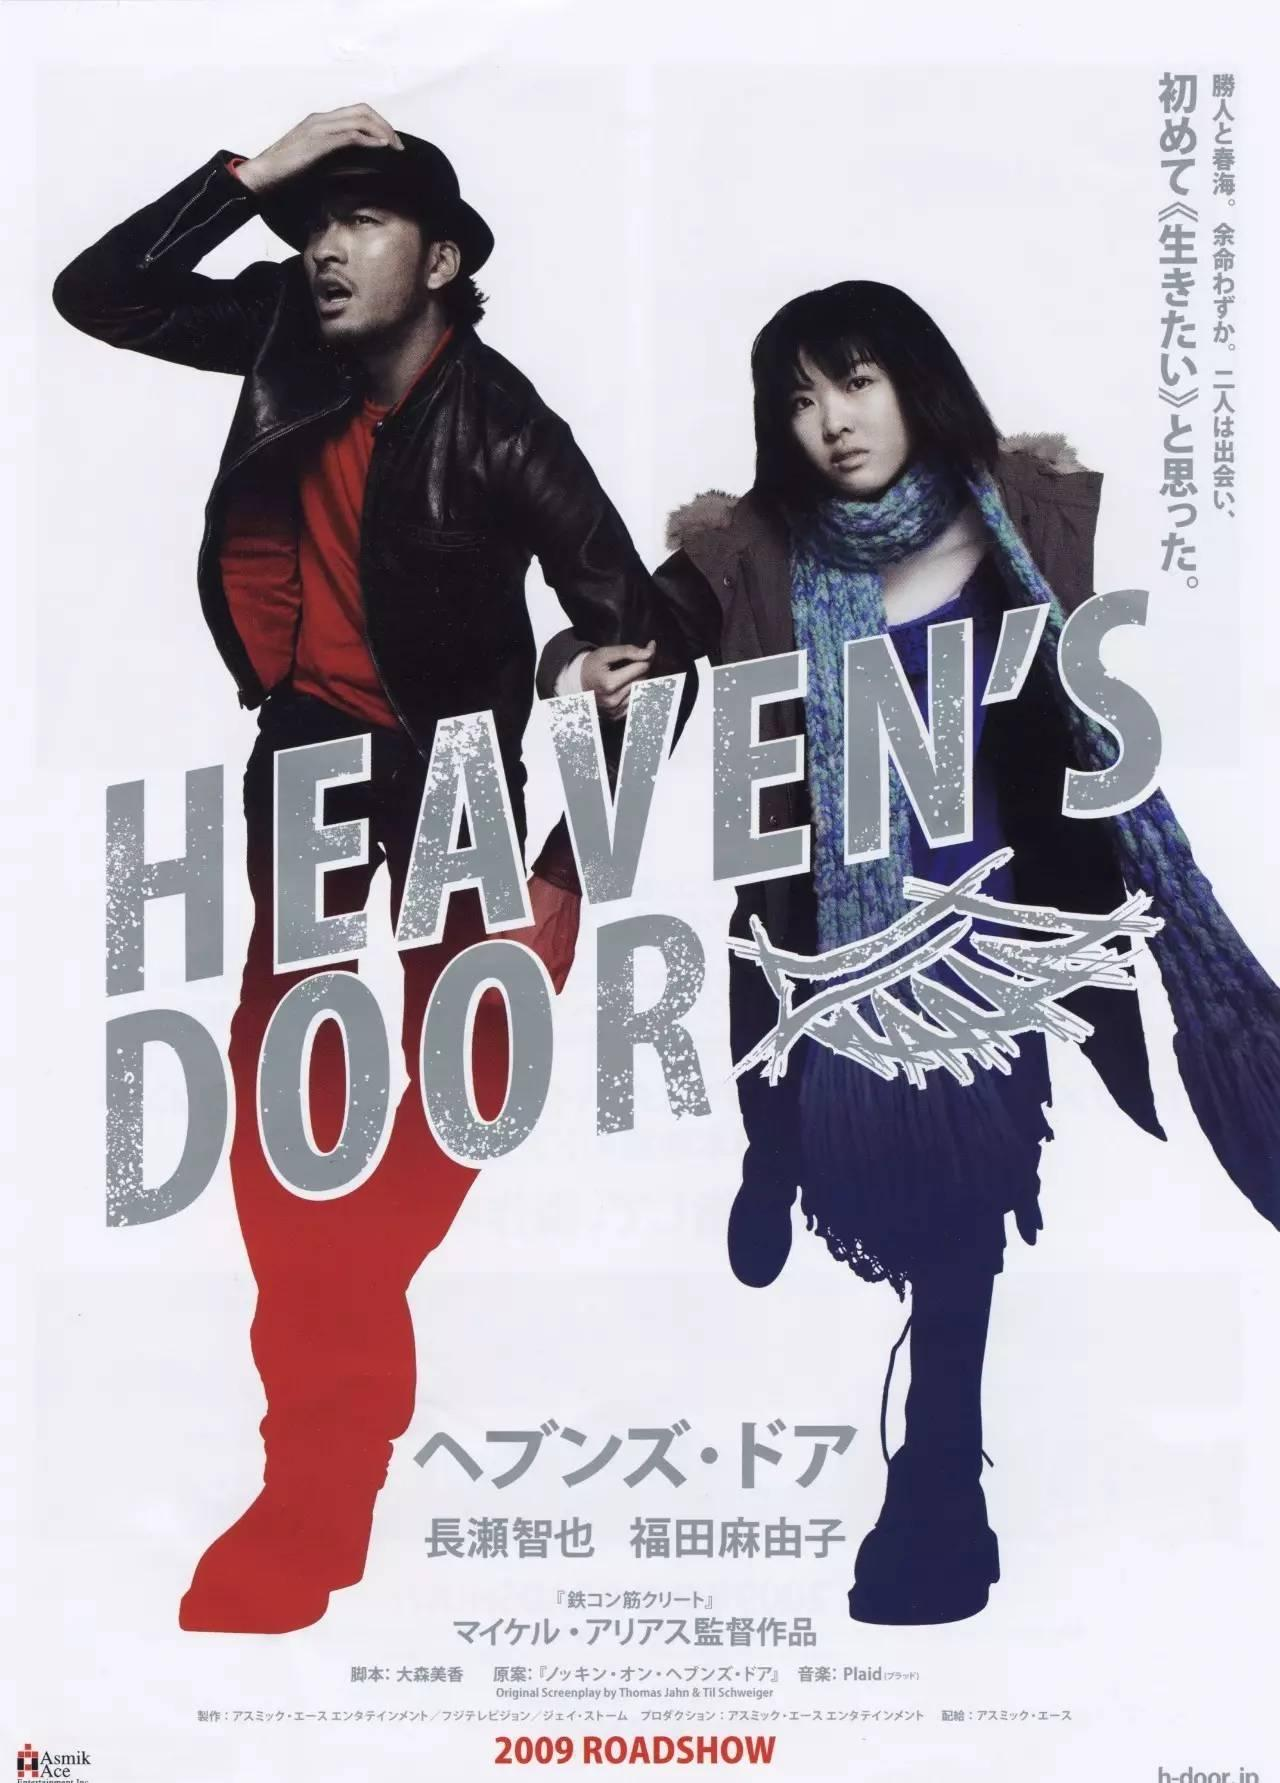 on heaven's door"